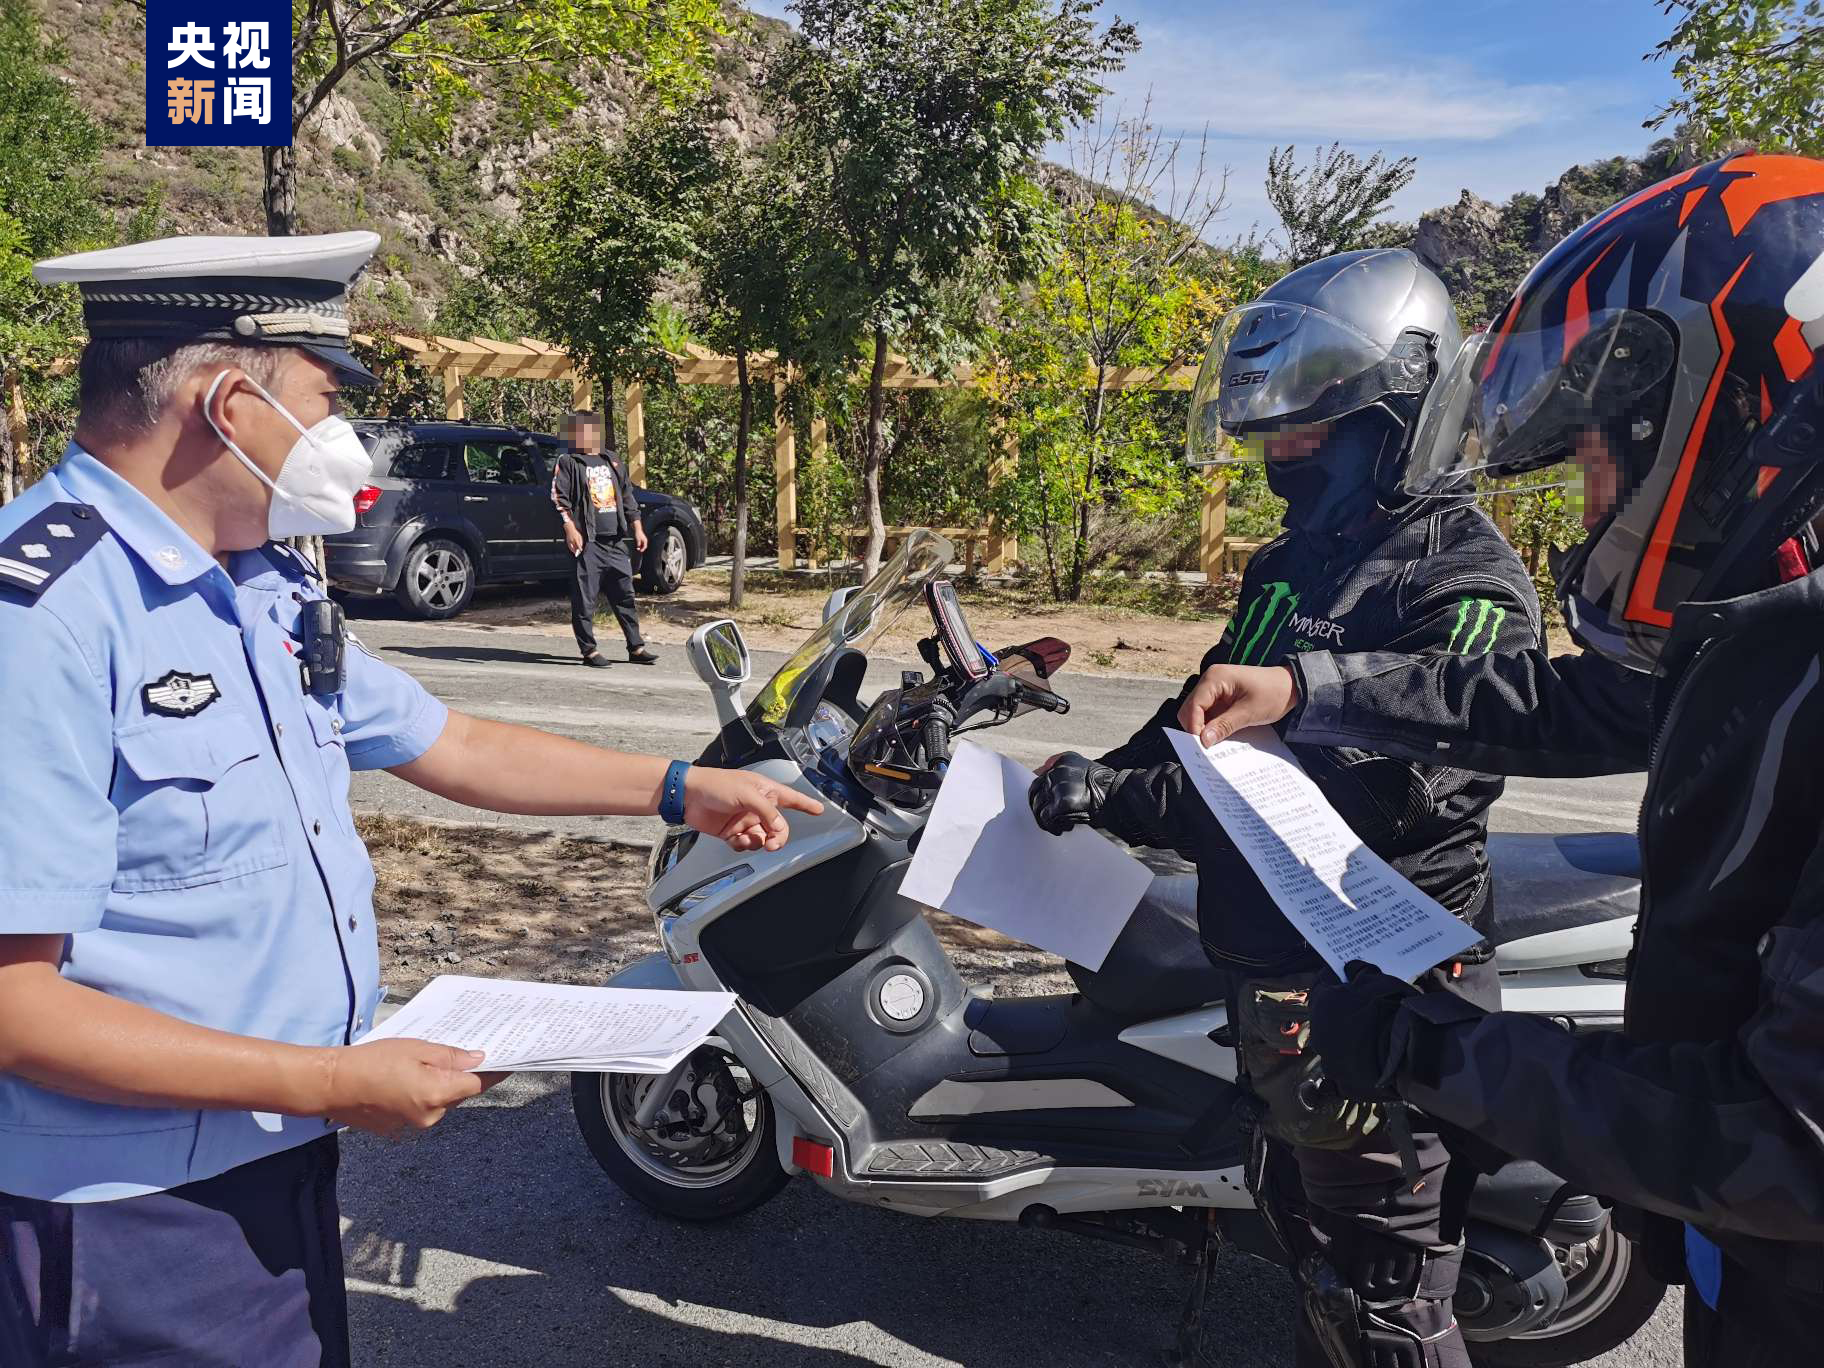 秋日摩托车郊游出行增多 北京交管部门发布安全提示